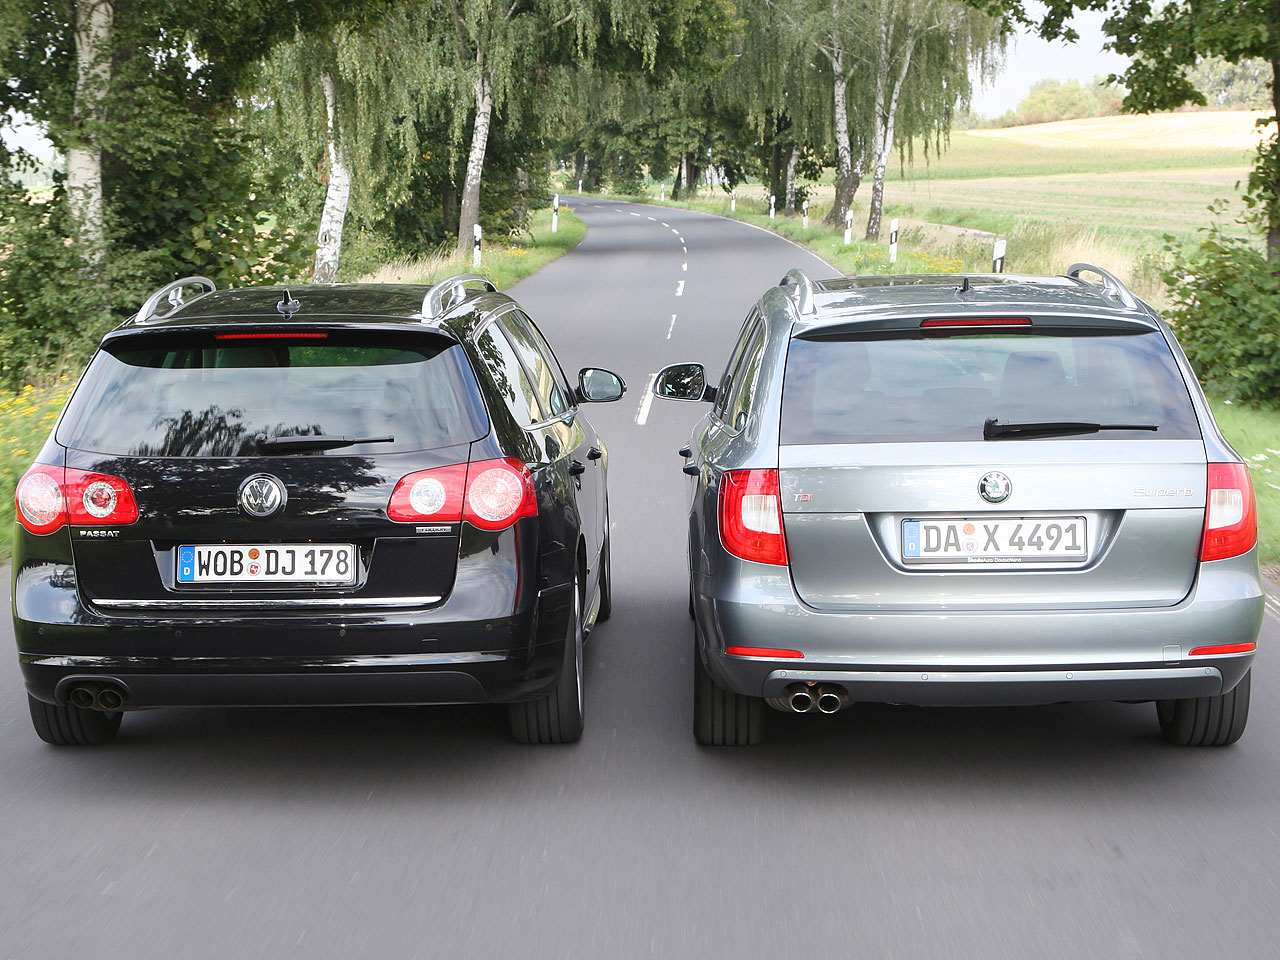 VW gegen Skoda Teil 2: Passat Variant und Superb Combi im